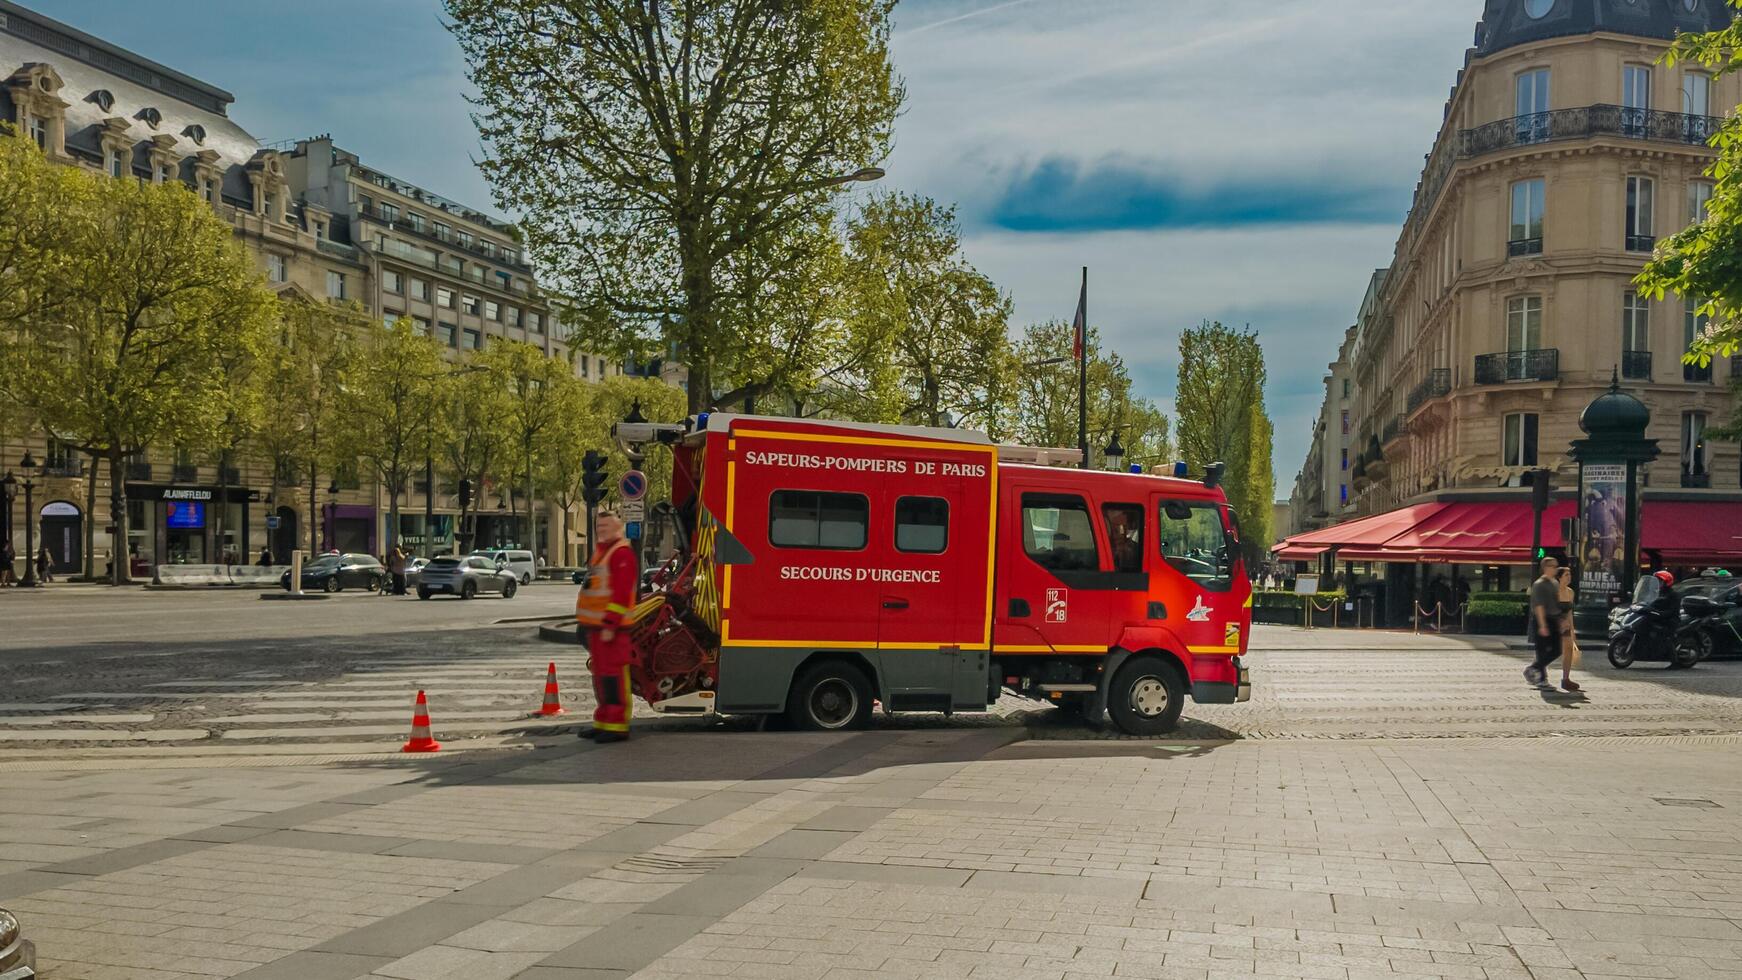 francés bombero en uniforme por un rojo fuego motor marcado sapeurs pompiers Delaware París en un emergencia llamada en París, Francia, en abril 14, 2024 foto